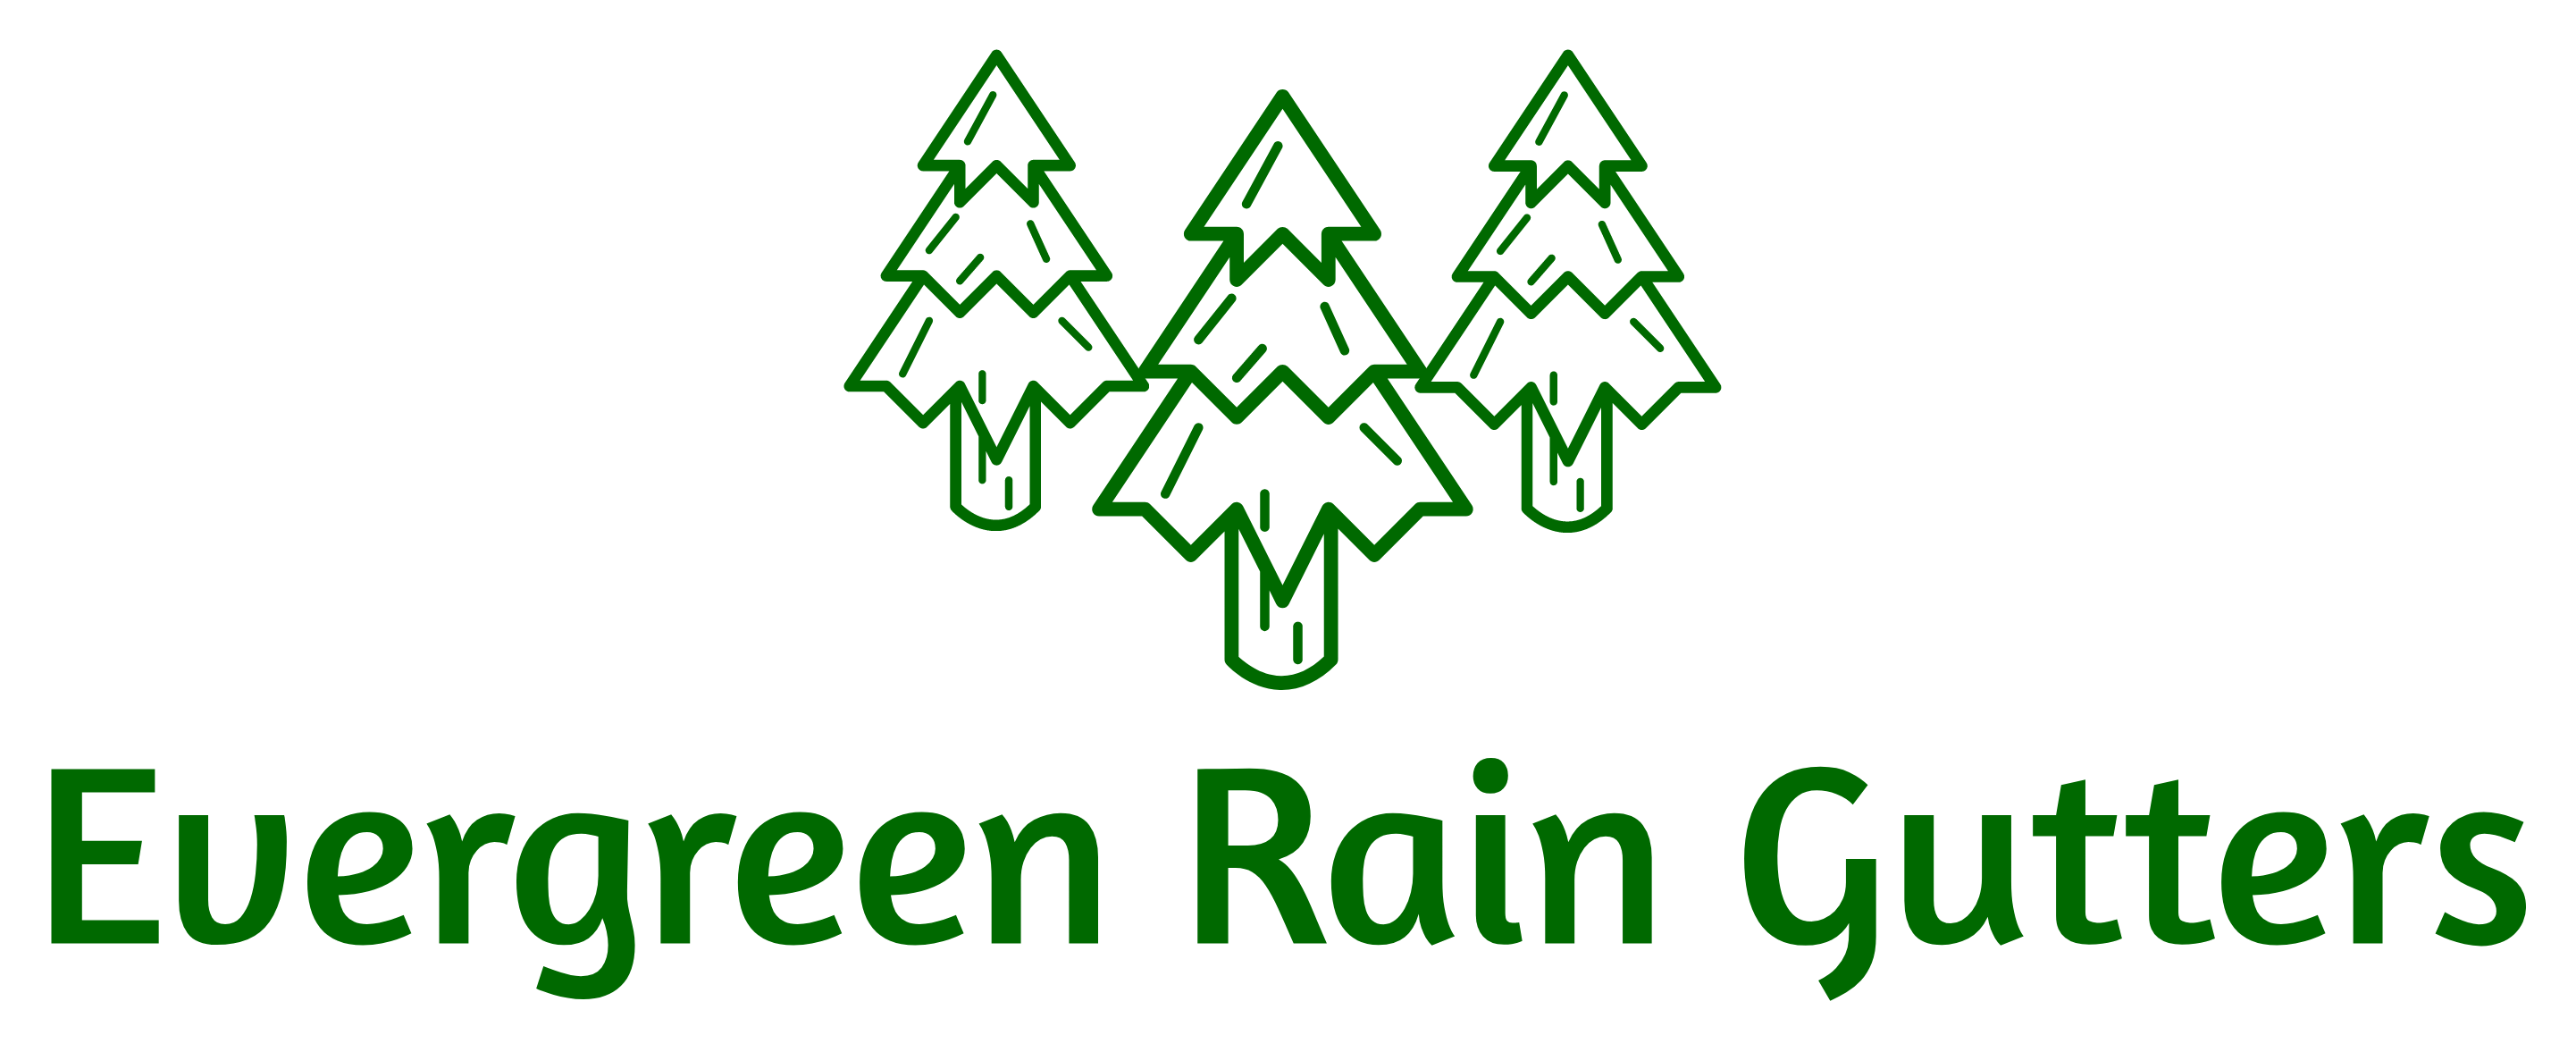 Evergreen Rain Gutters LLC Logo